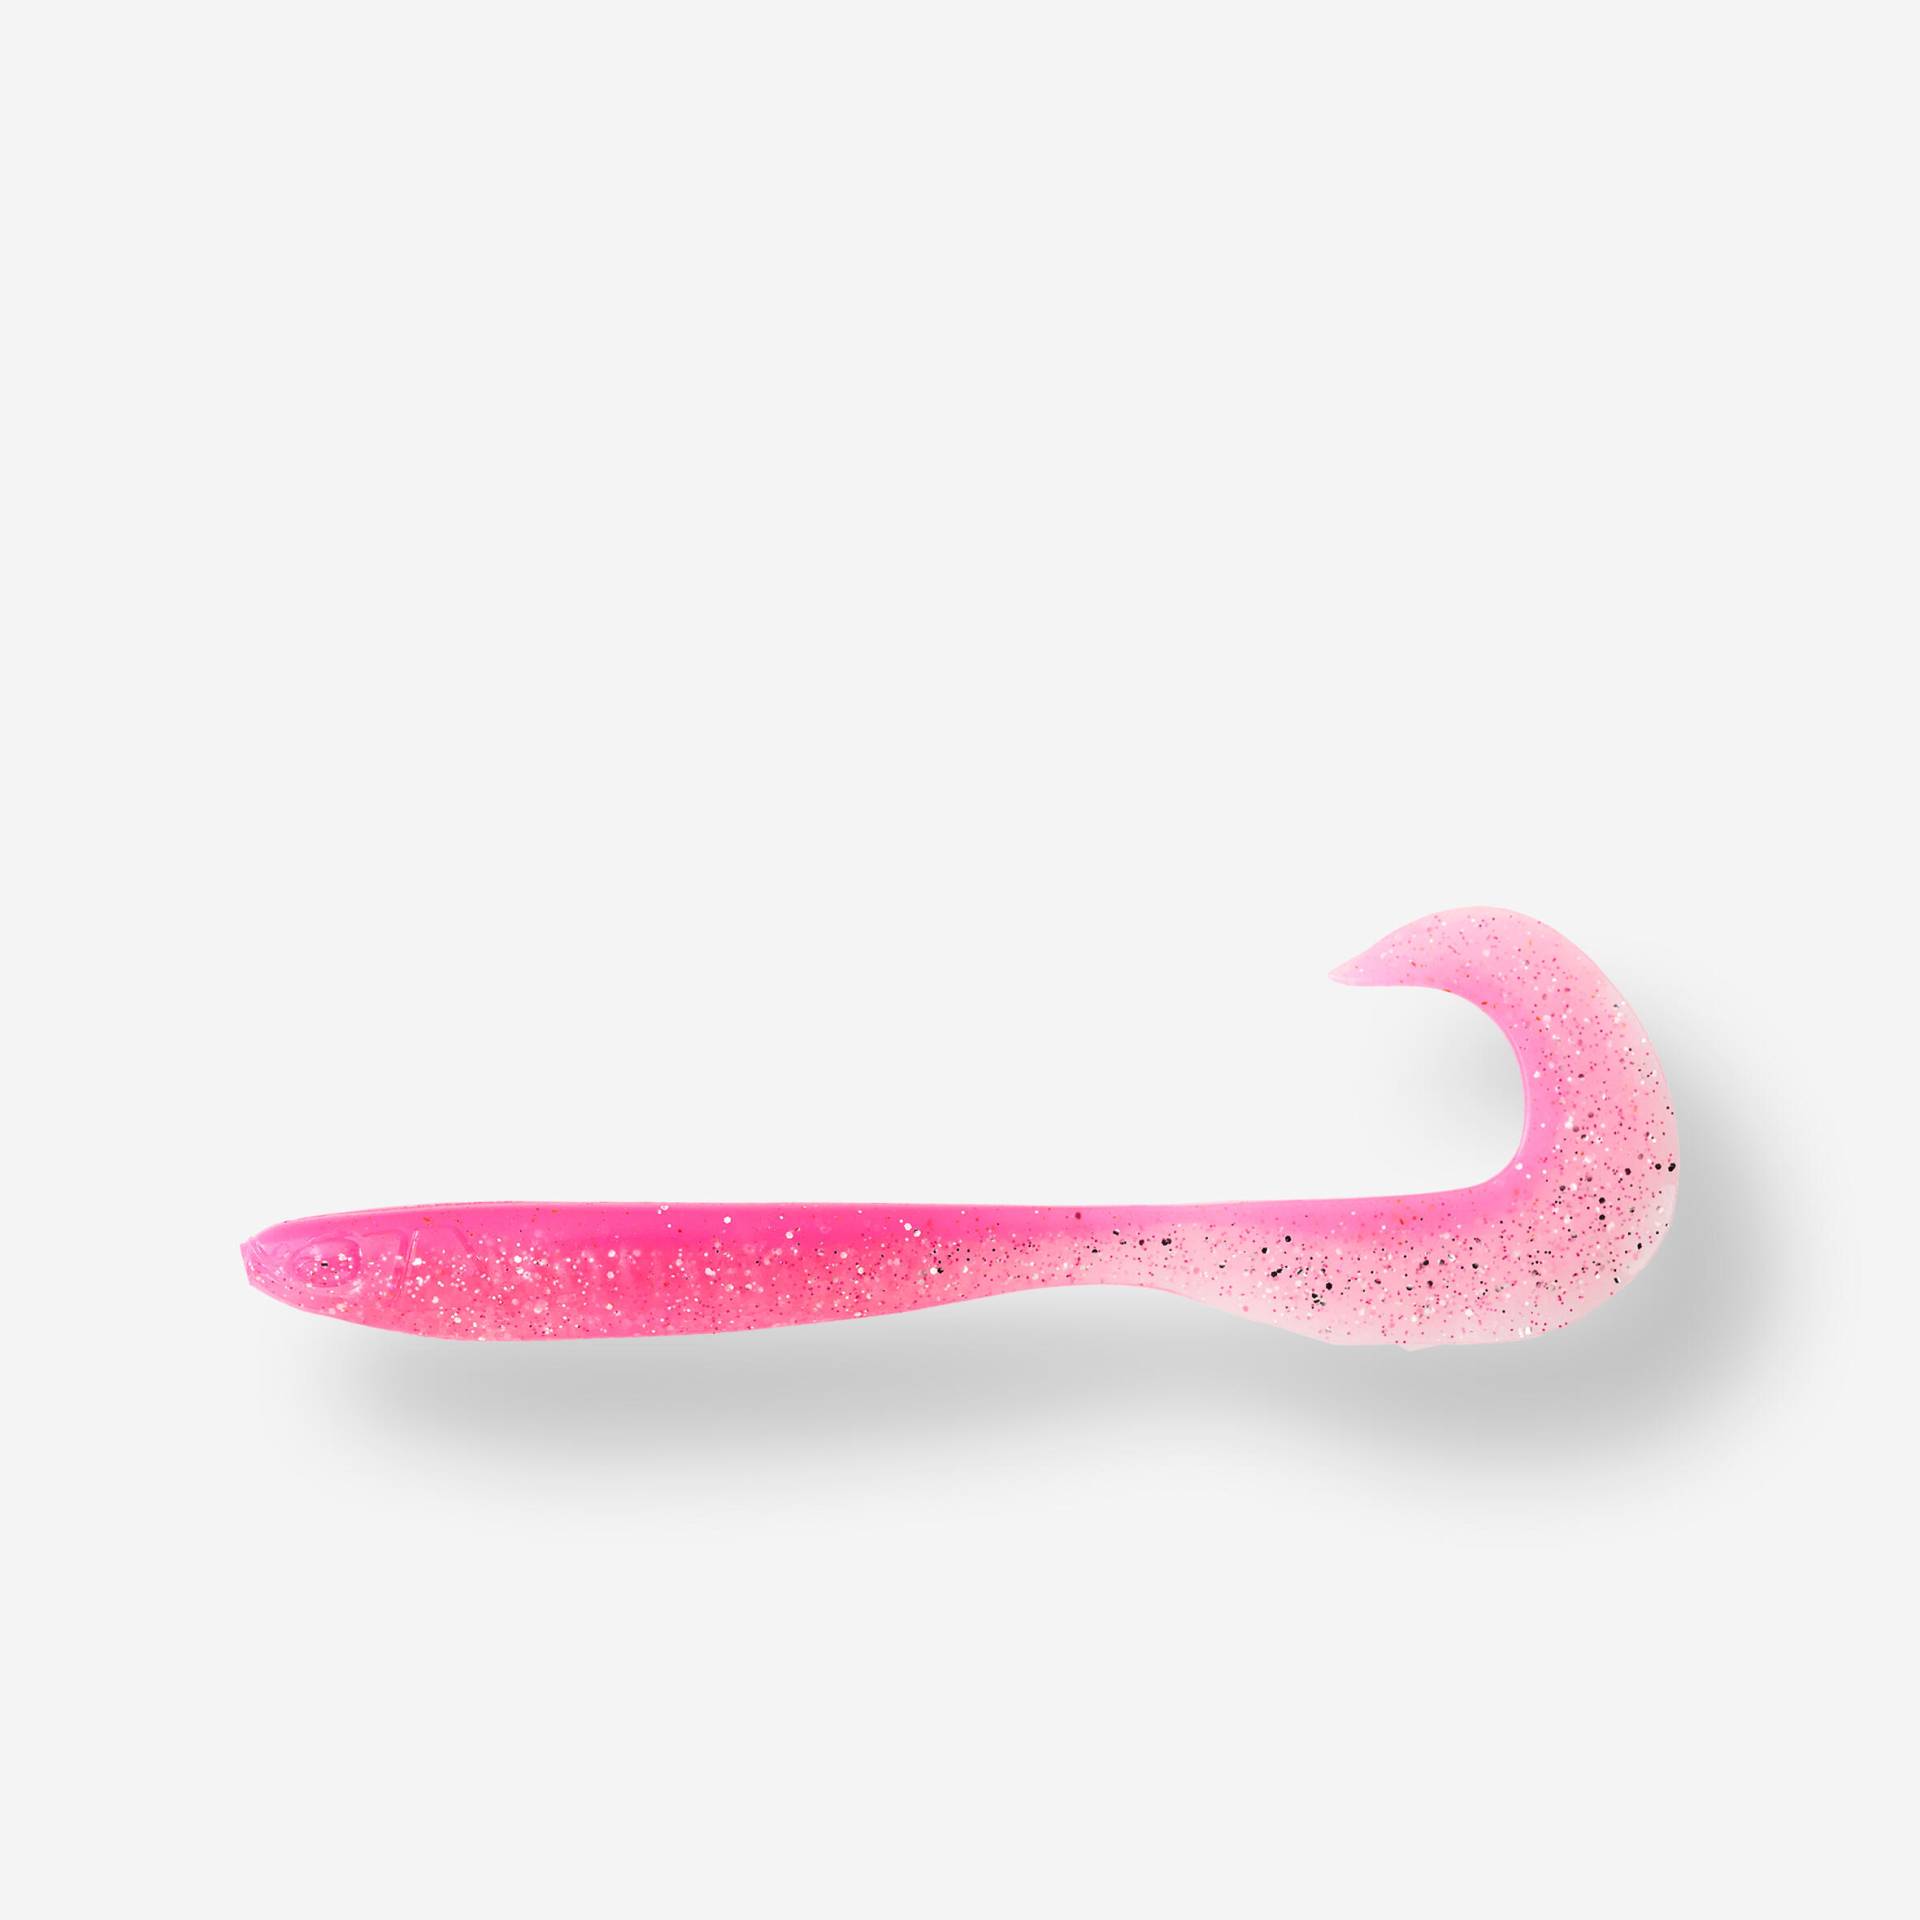 Gummiköder Twister Grub WXM Yubari 60 mit Lockstoff rosa von CAPERLAN